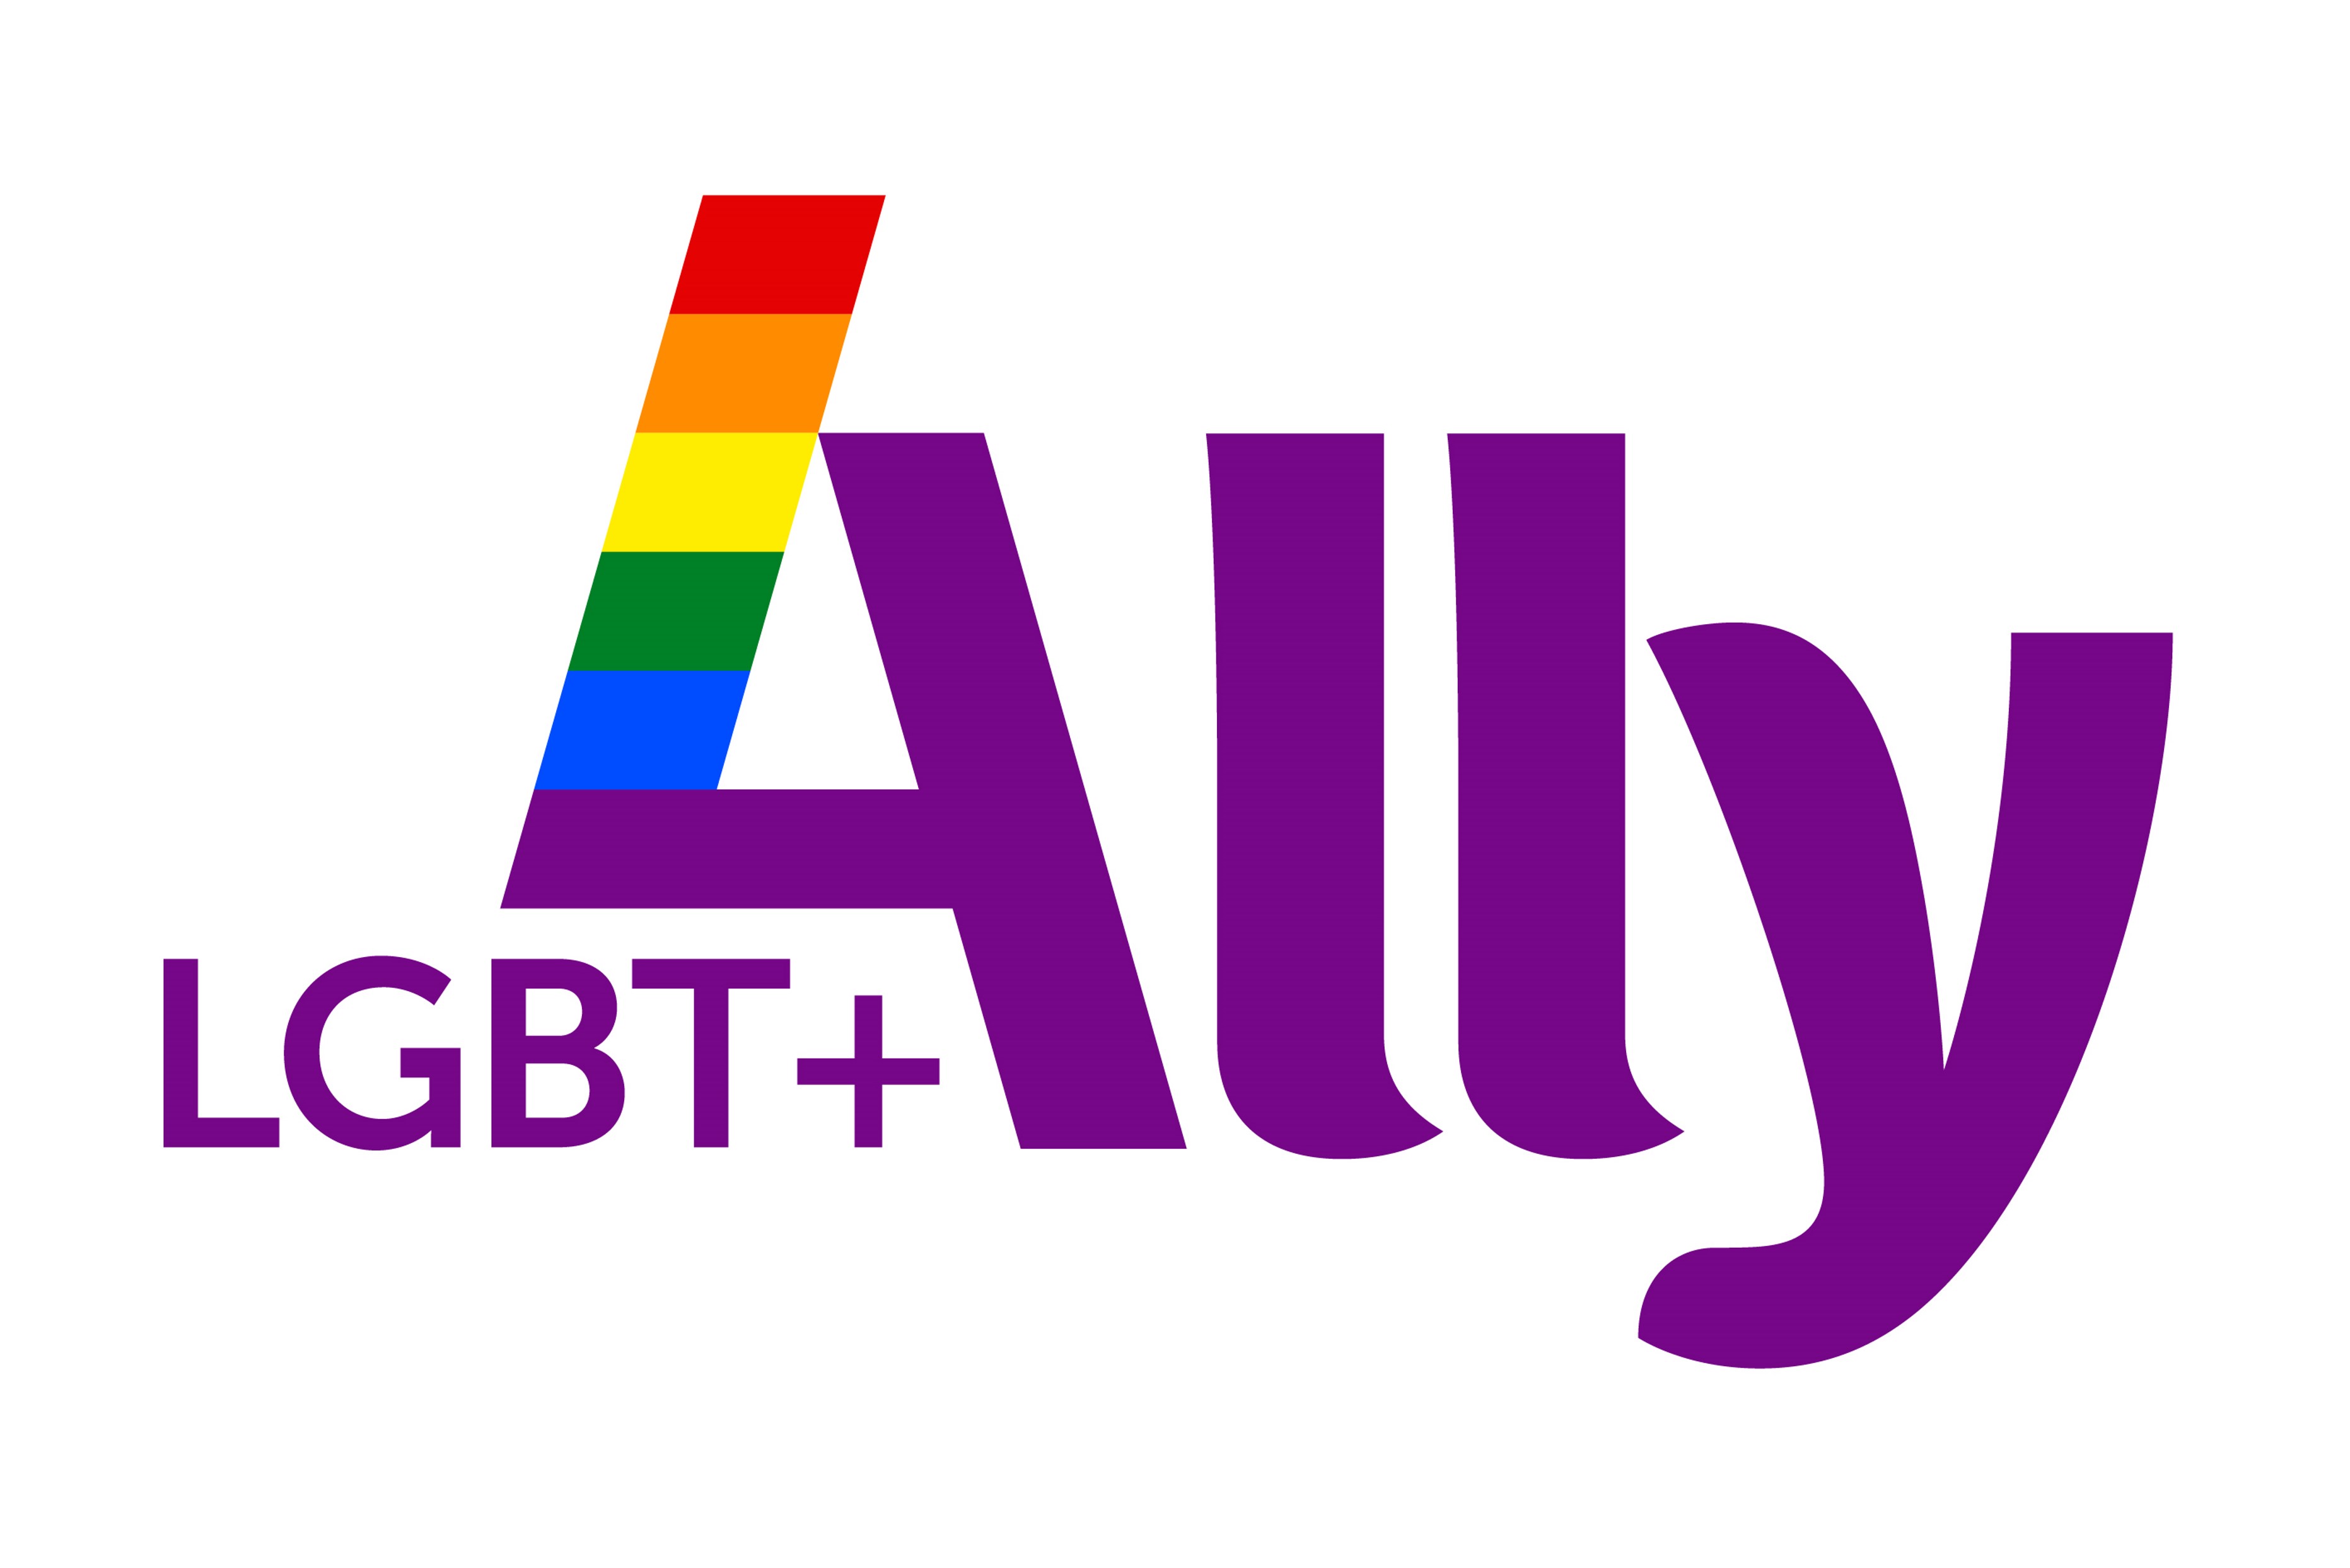 LGBT+ Ally Programme